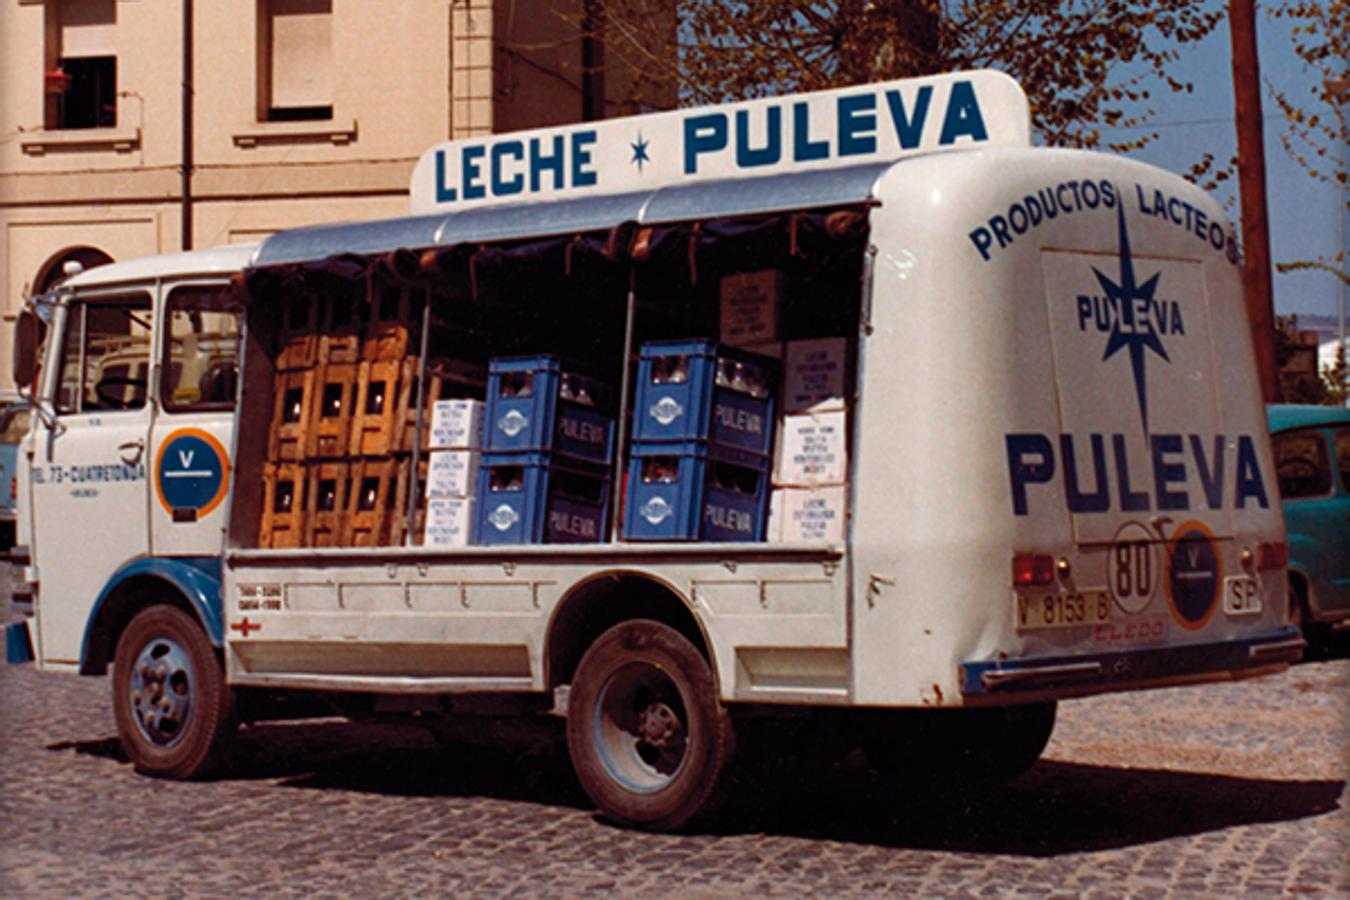 1973. OBJETIVO LEVANTE. La zona de levante fe de especial interés para la marca desde casi los inicios, dentro de su estrategia de expansión. En la imagen, un camión de reparto de PULEVA en Valencia y alrededores. 